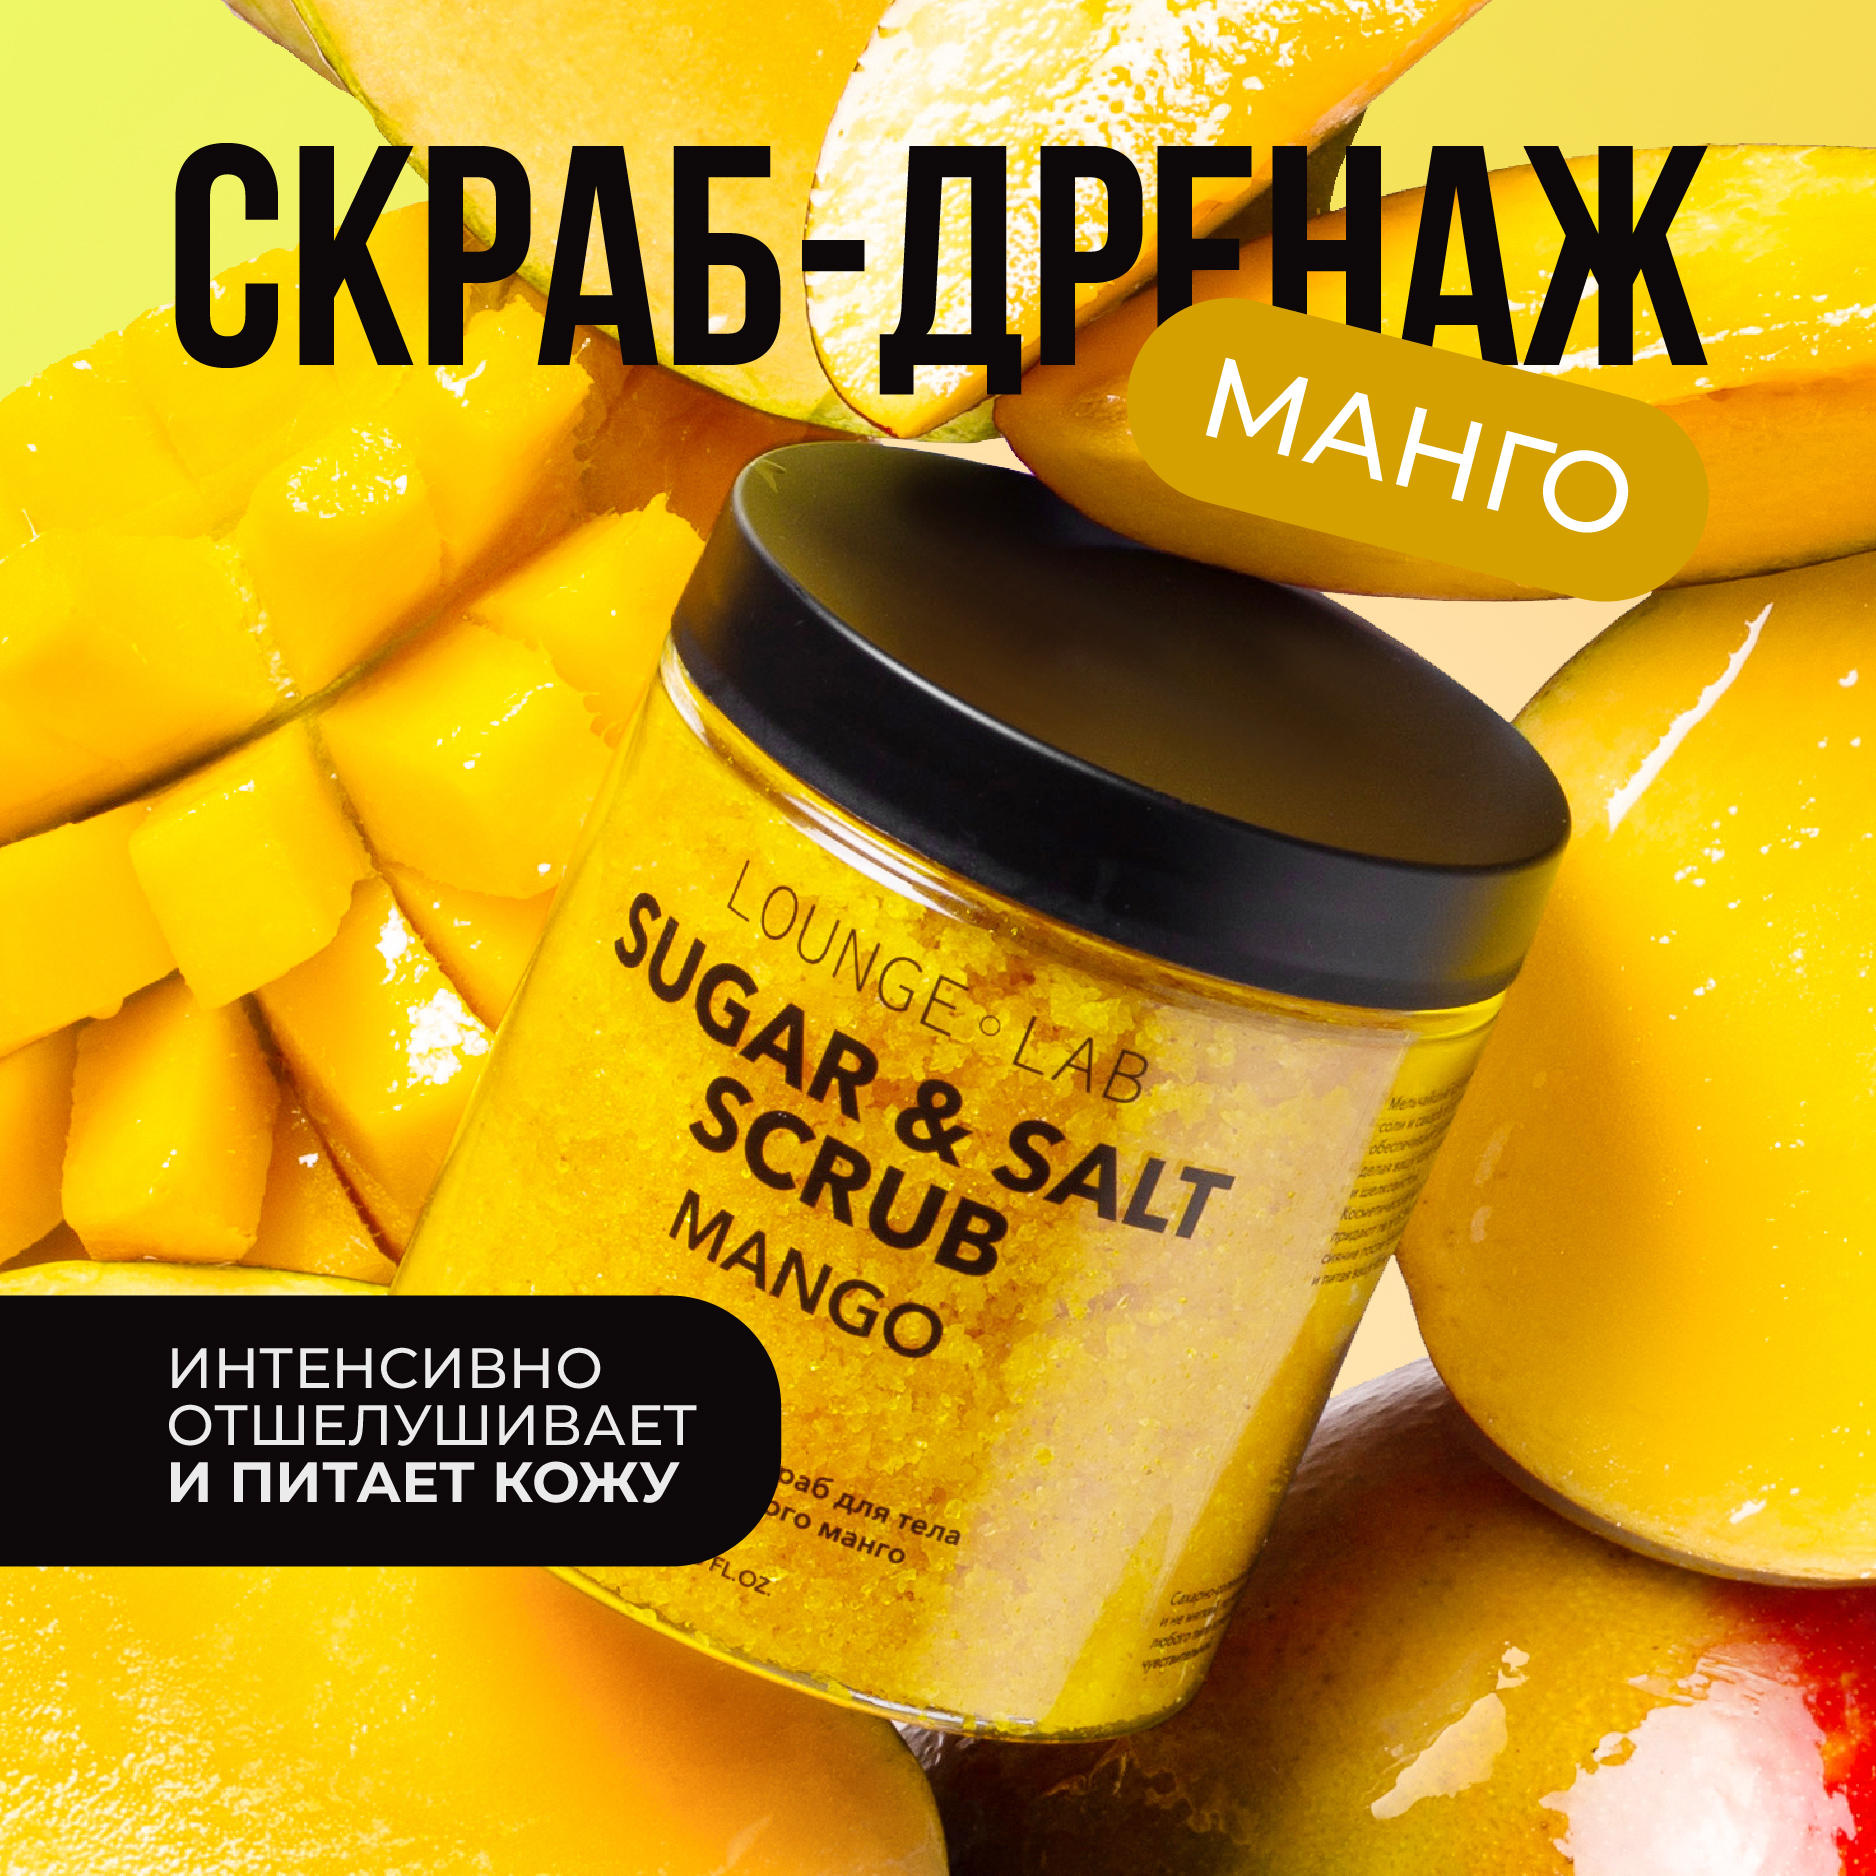 Скраб для тела LOUNGE LAB Сочный манго антицеллюлитный сахарно-солевой 250 мл скраб для тела добропаровъ солевой грейпфрут любимой маме 320 мл